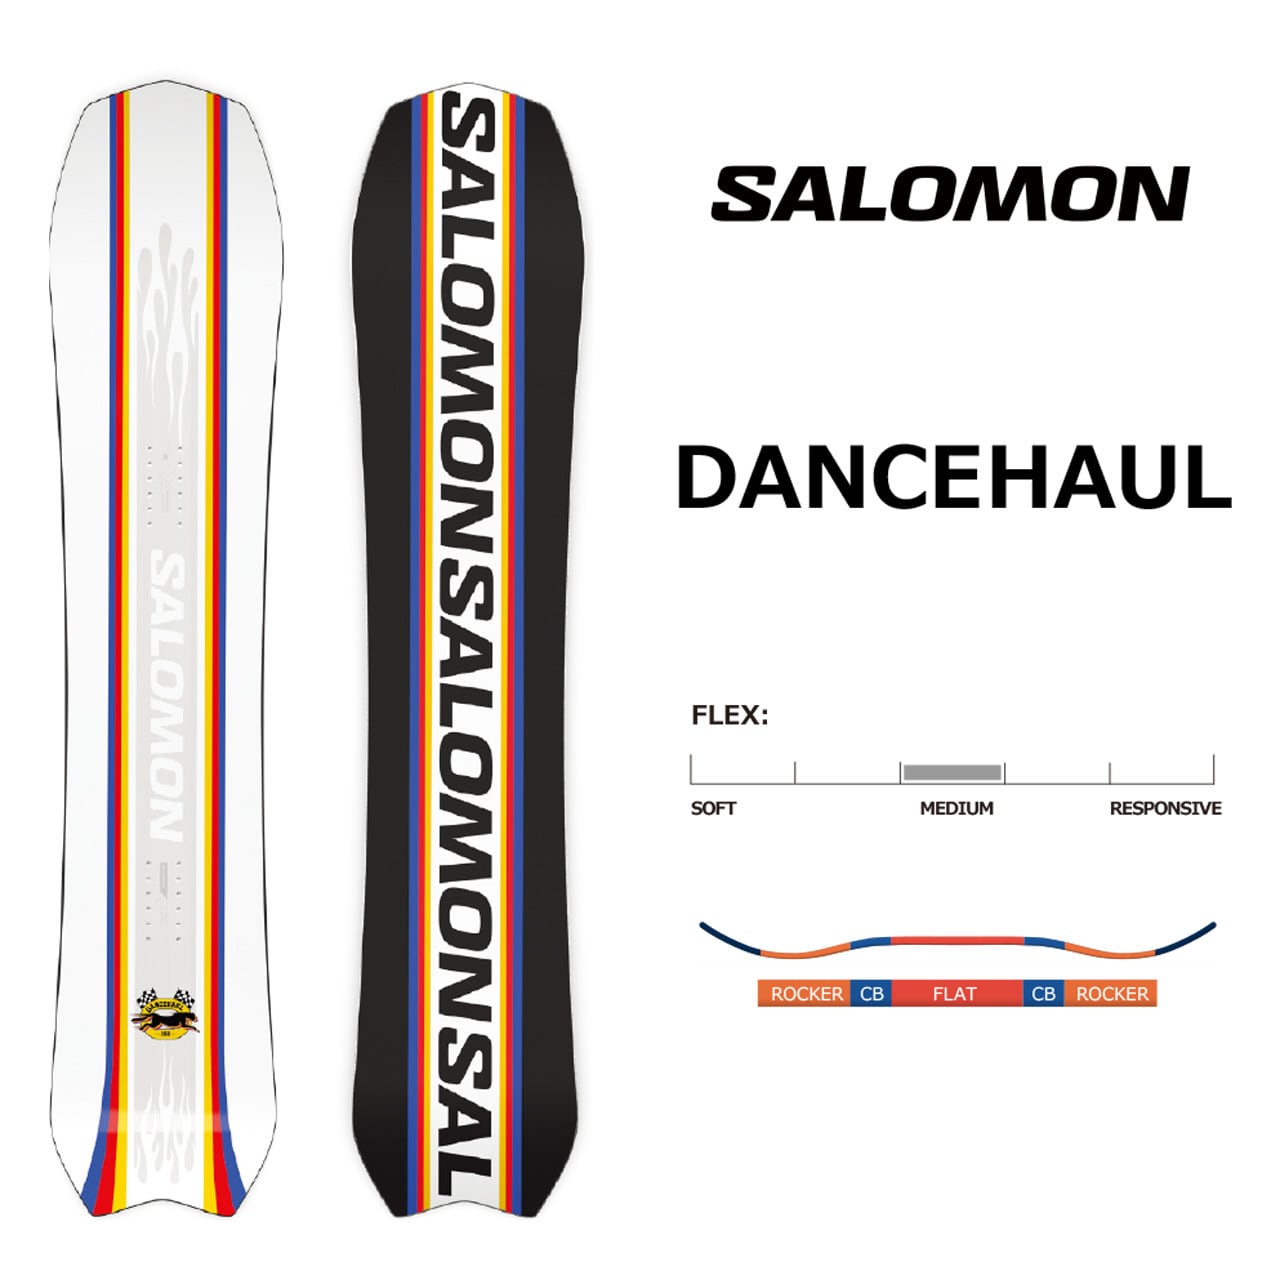 SALOMON 143cm フラット